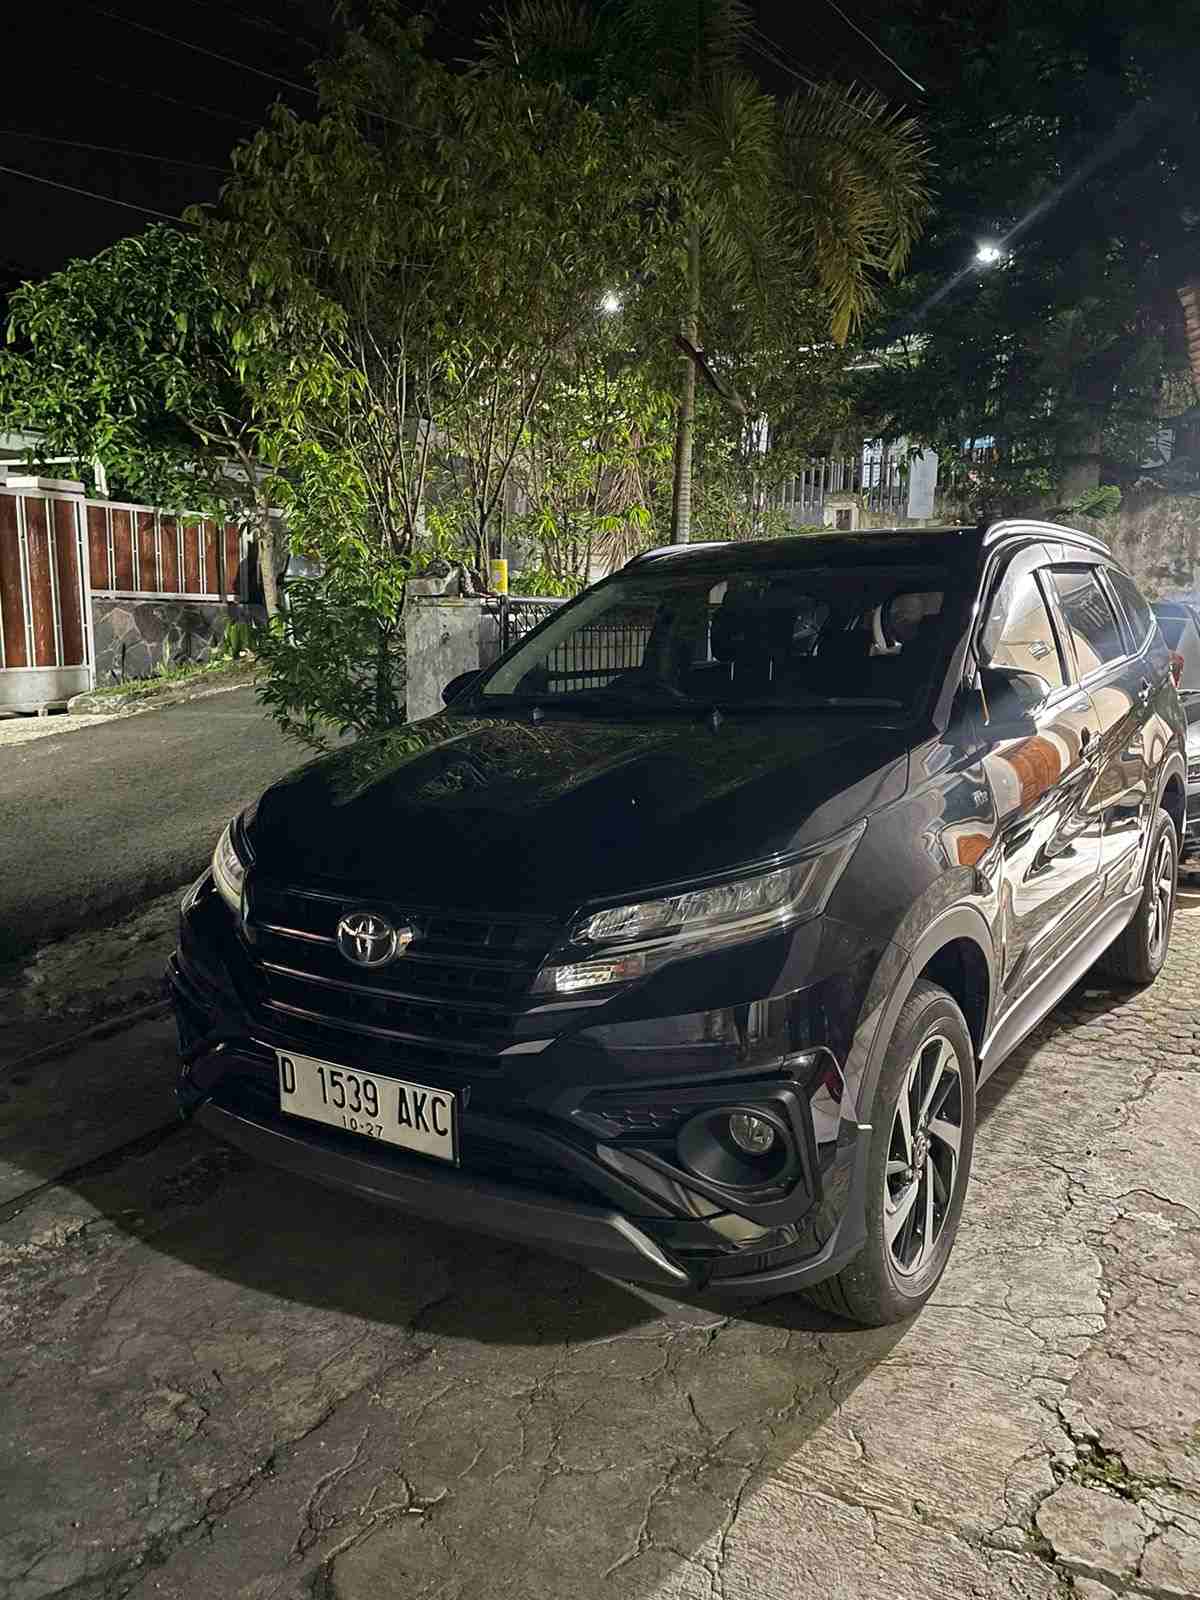 Promo Rental Mobil Avanza Terbaru Di Bogor